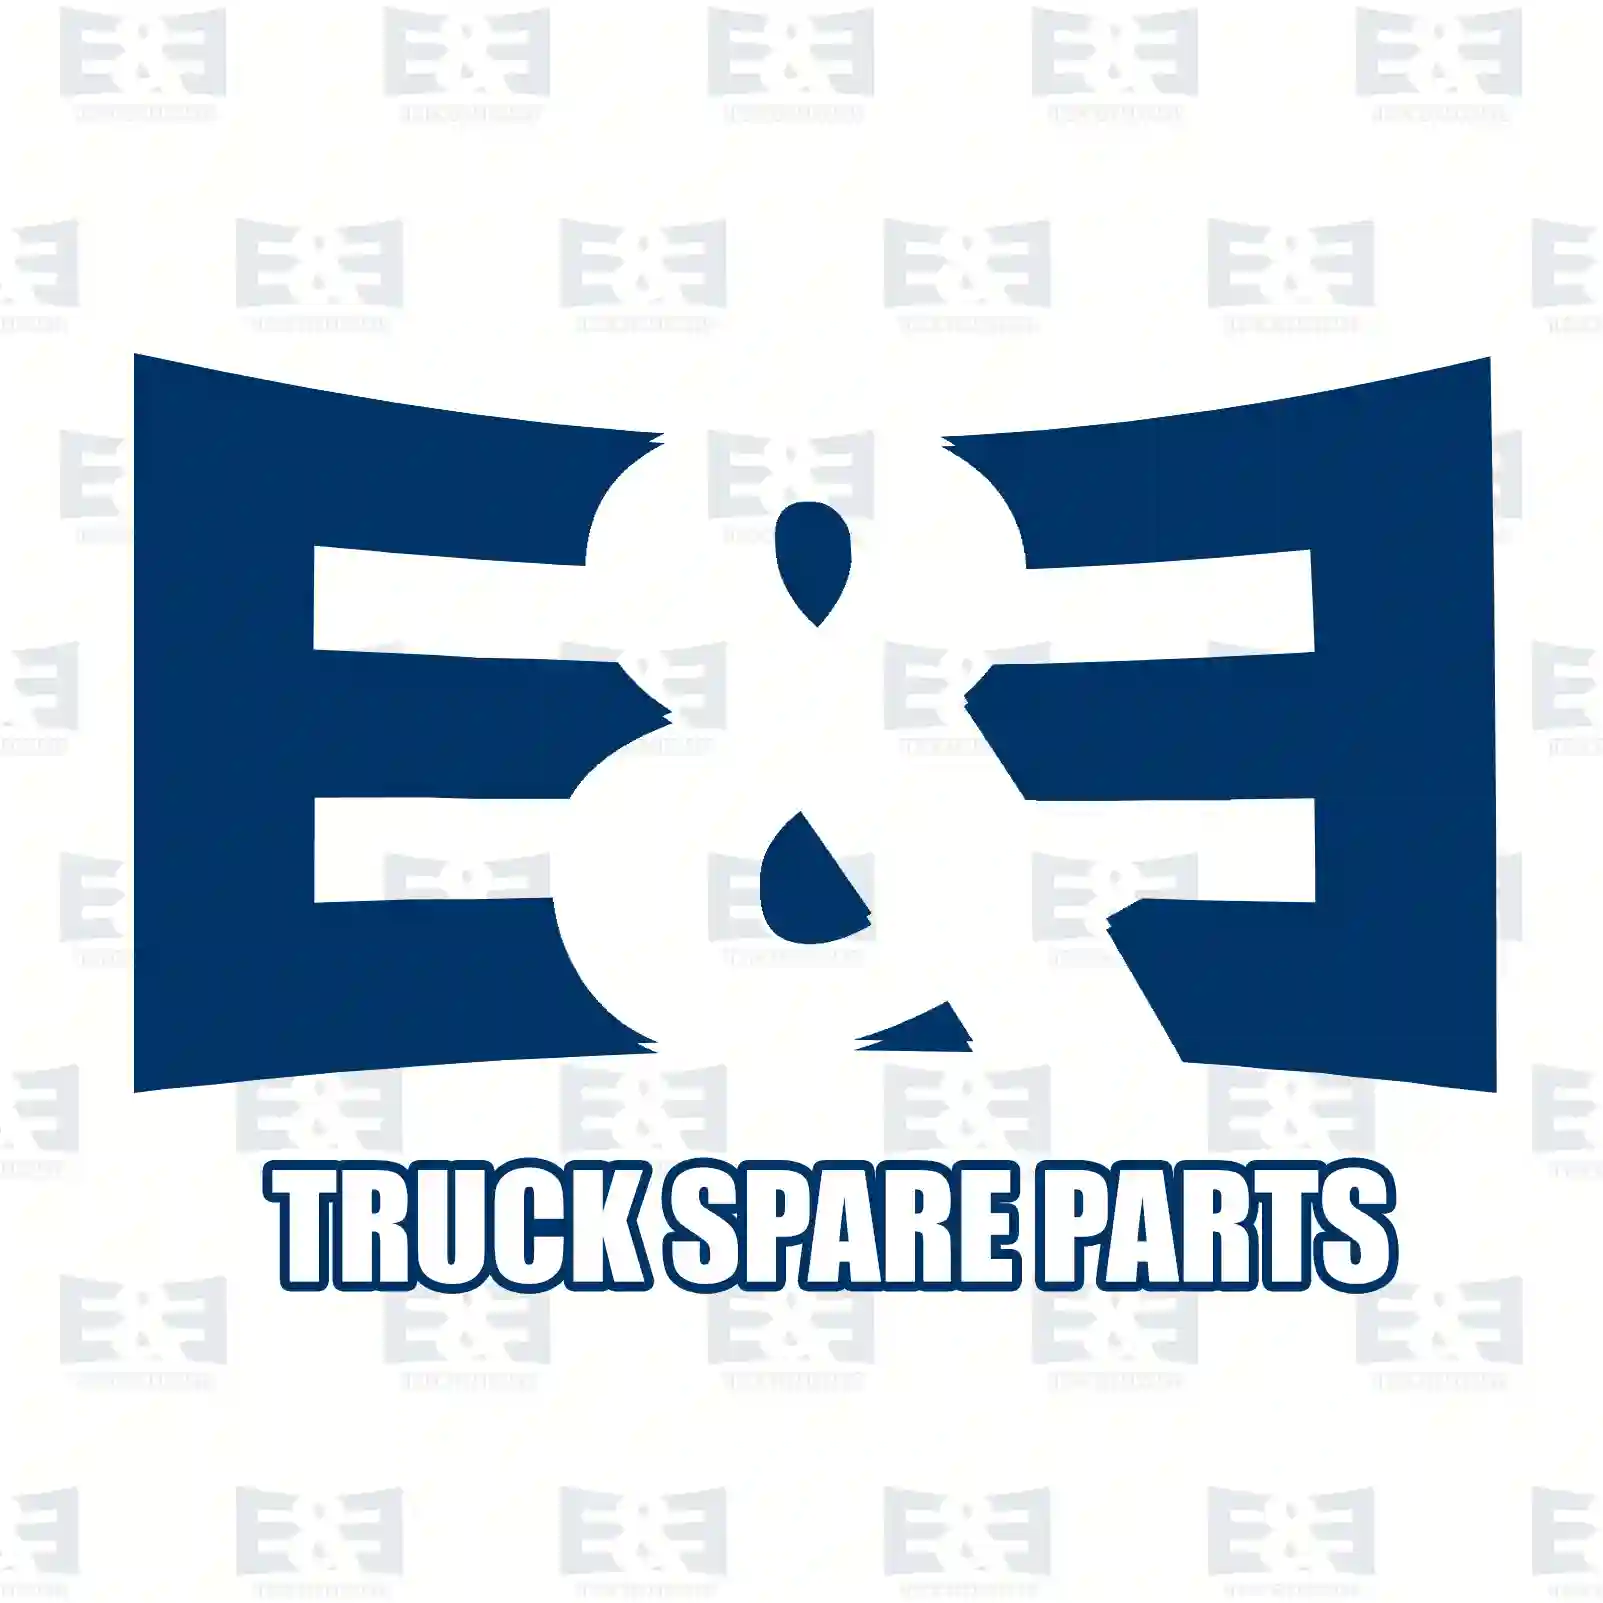 Brake caliper, right, 2E2296662, 6394200183, 6394200583, 6394200783, 6394201183 ||  2E2296662 E&E Truck Spare Parts | Truck Spare Parts, Auotomotive Spare Parts Brake caliper, right, 2E2296662, 6394200183, 6394200583, 6394200783, 6394201183 ||  2E2296662 E&E Truck Spare Parts | Truck Spare Parts, Auotomotive Spare Parts